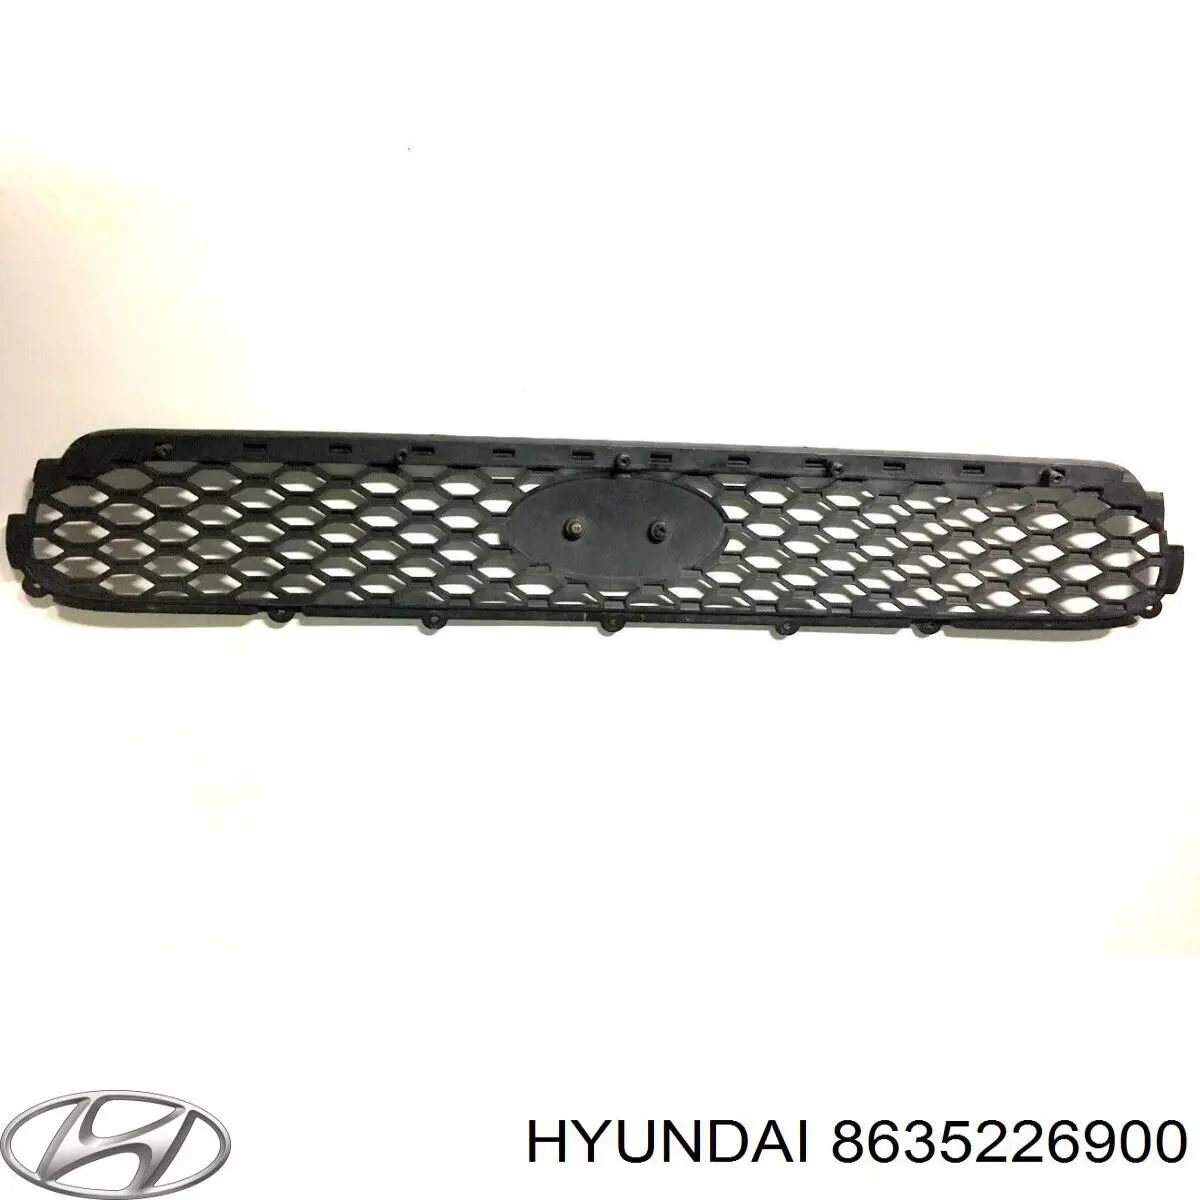 8635226900 Hyundai/Kia parrilla